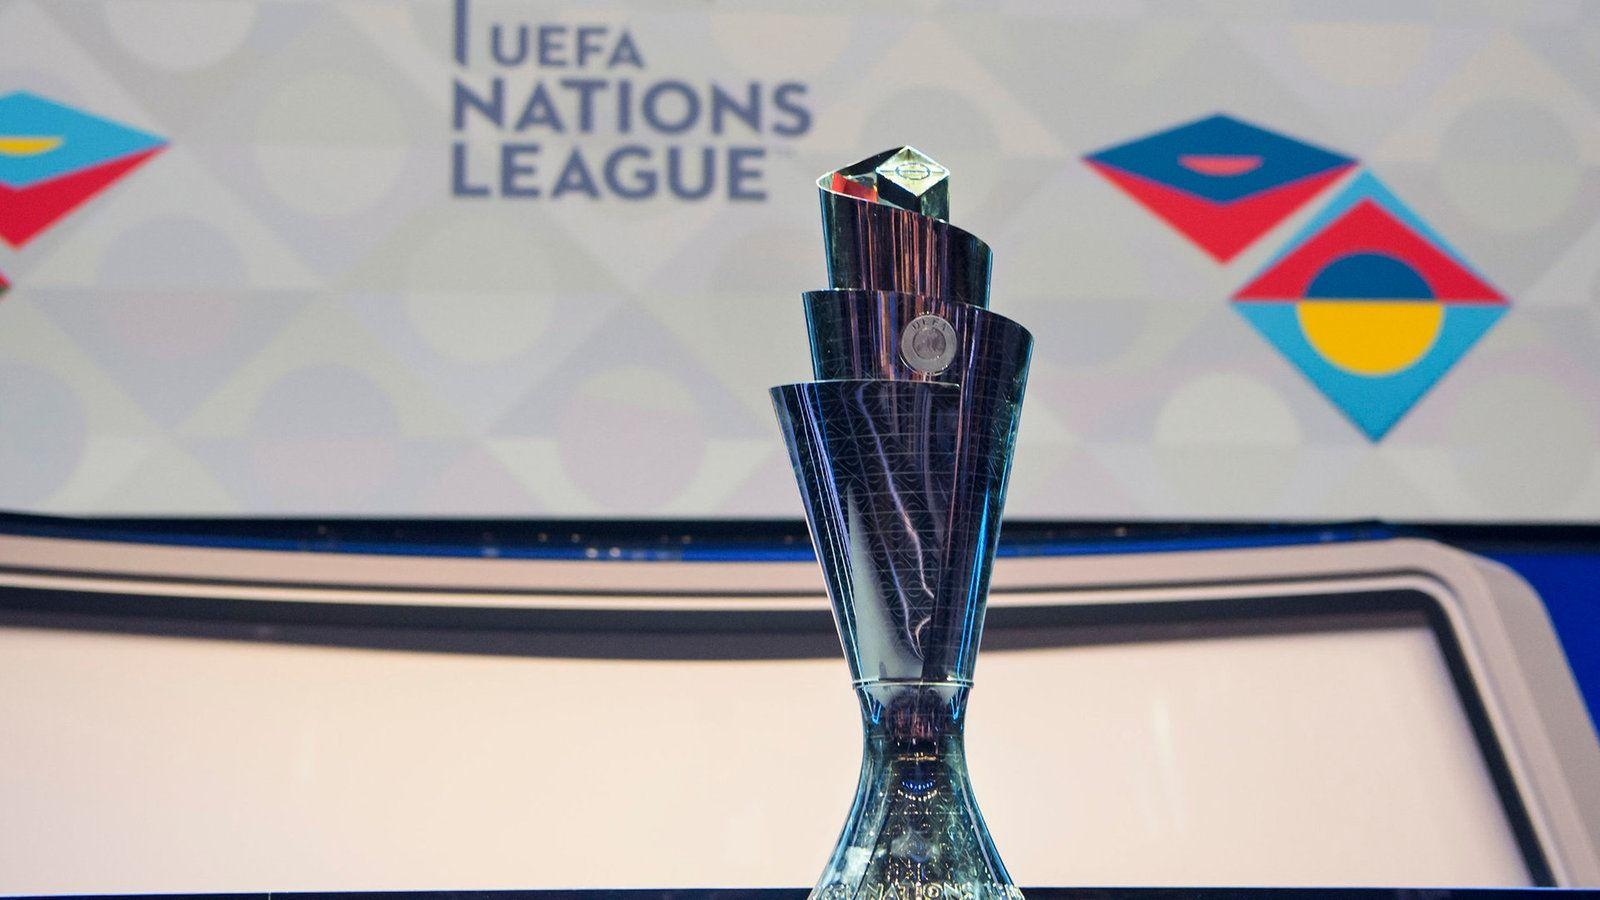 Die Uefa Nations League und ihr Modus kurz und knapp erklärt